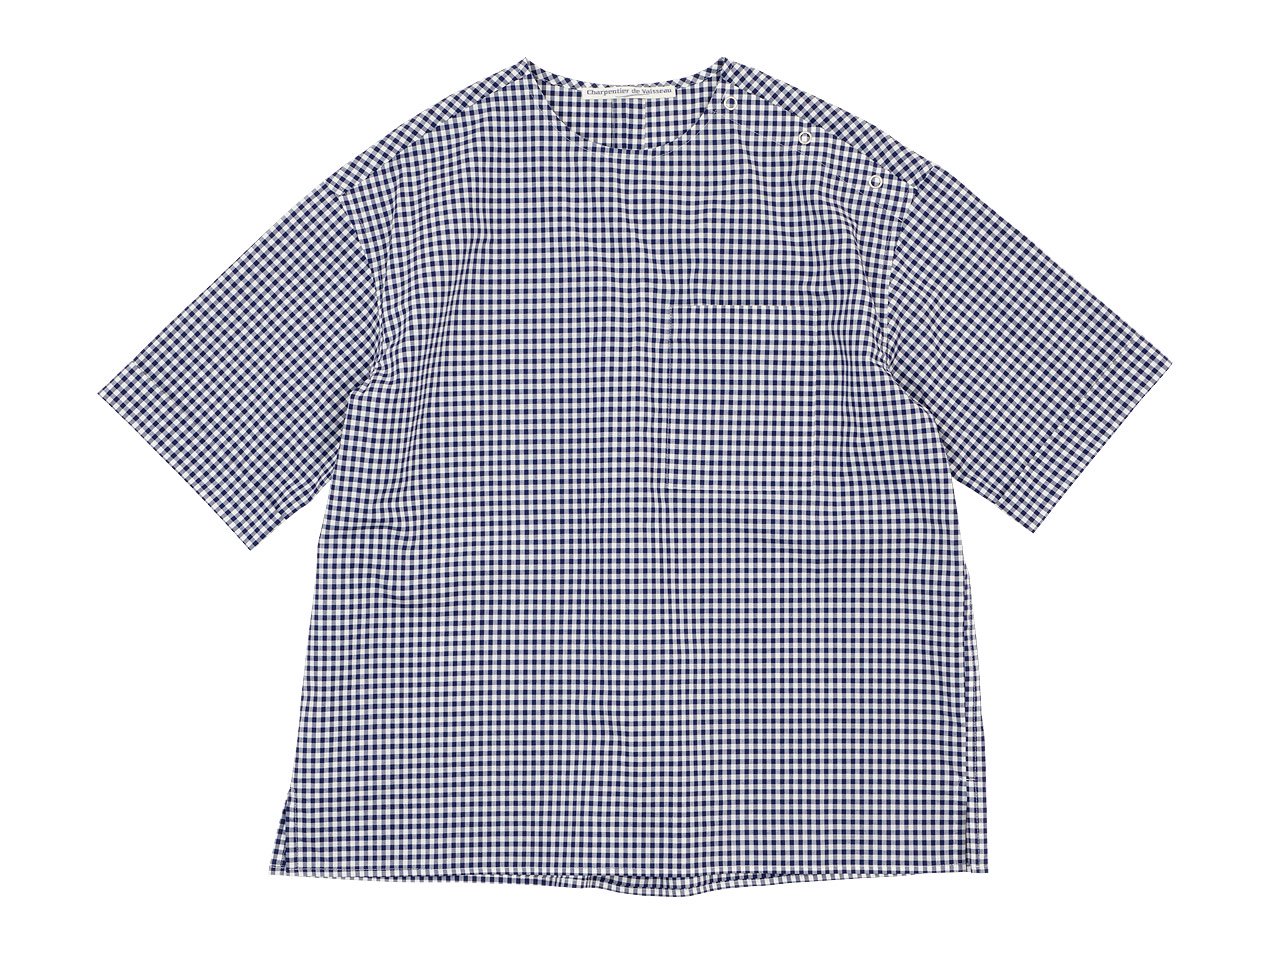 Charpentier de Vaisseau Sophie Shoulder Button Short Sleeve Shirts NAVY CHECK